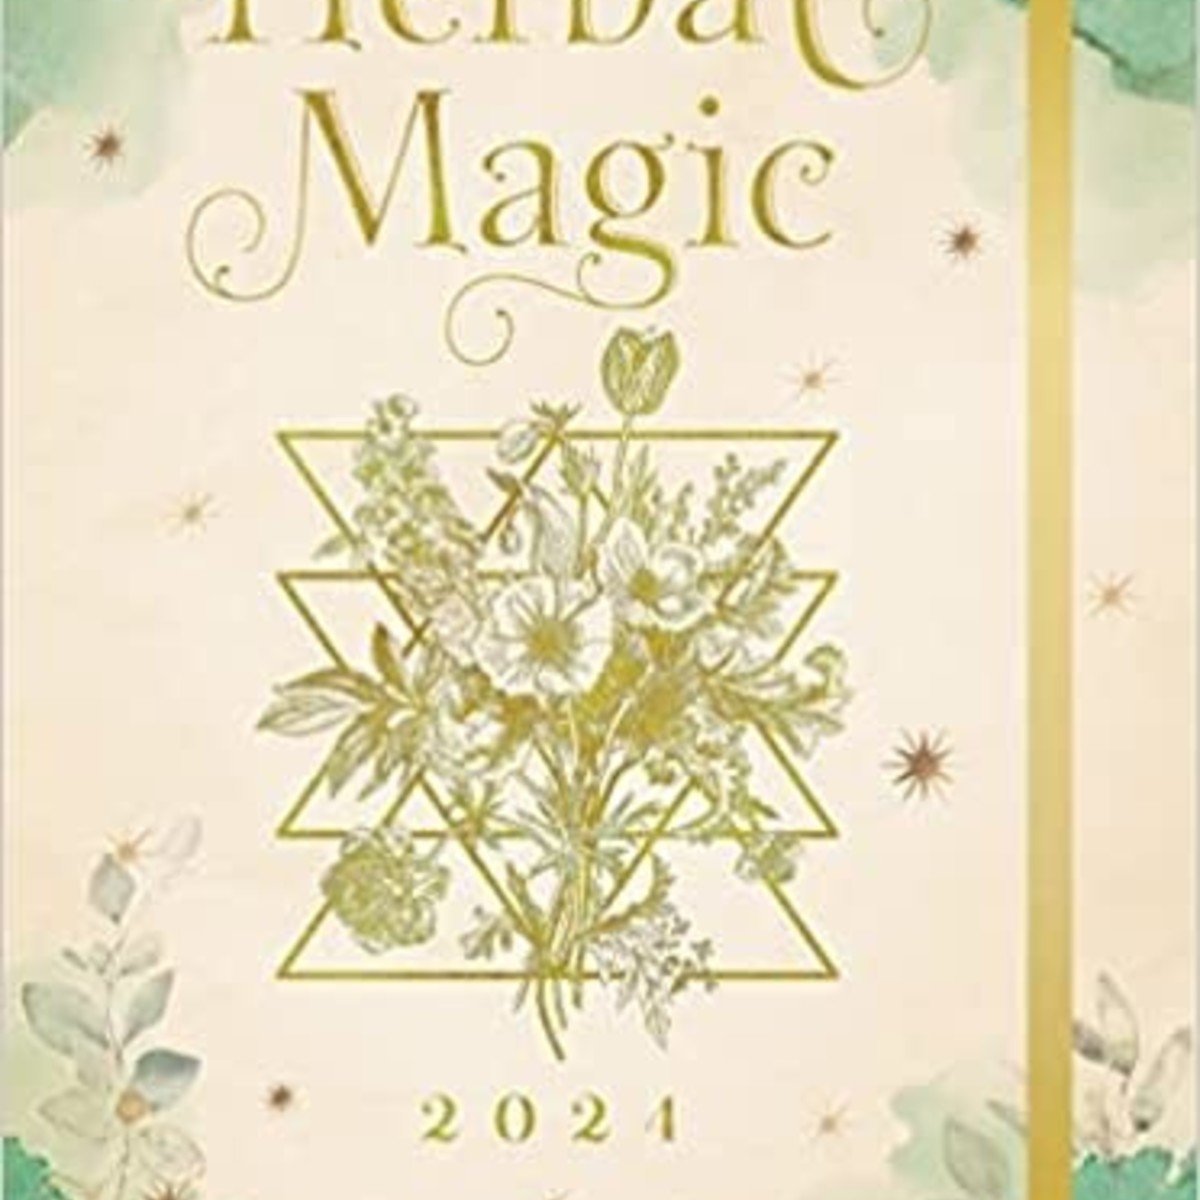 Herbal Magic 2024 Weekly Planner: July 2023 - December 2024 Hardcover